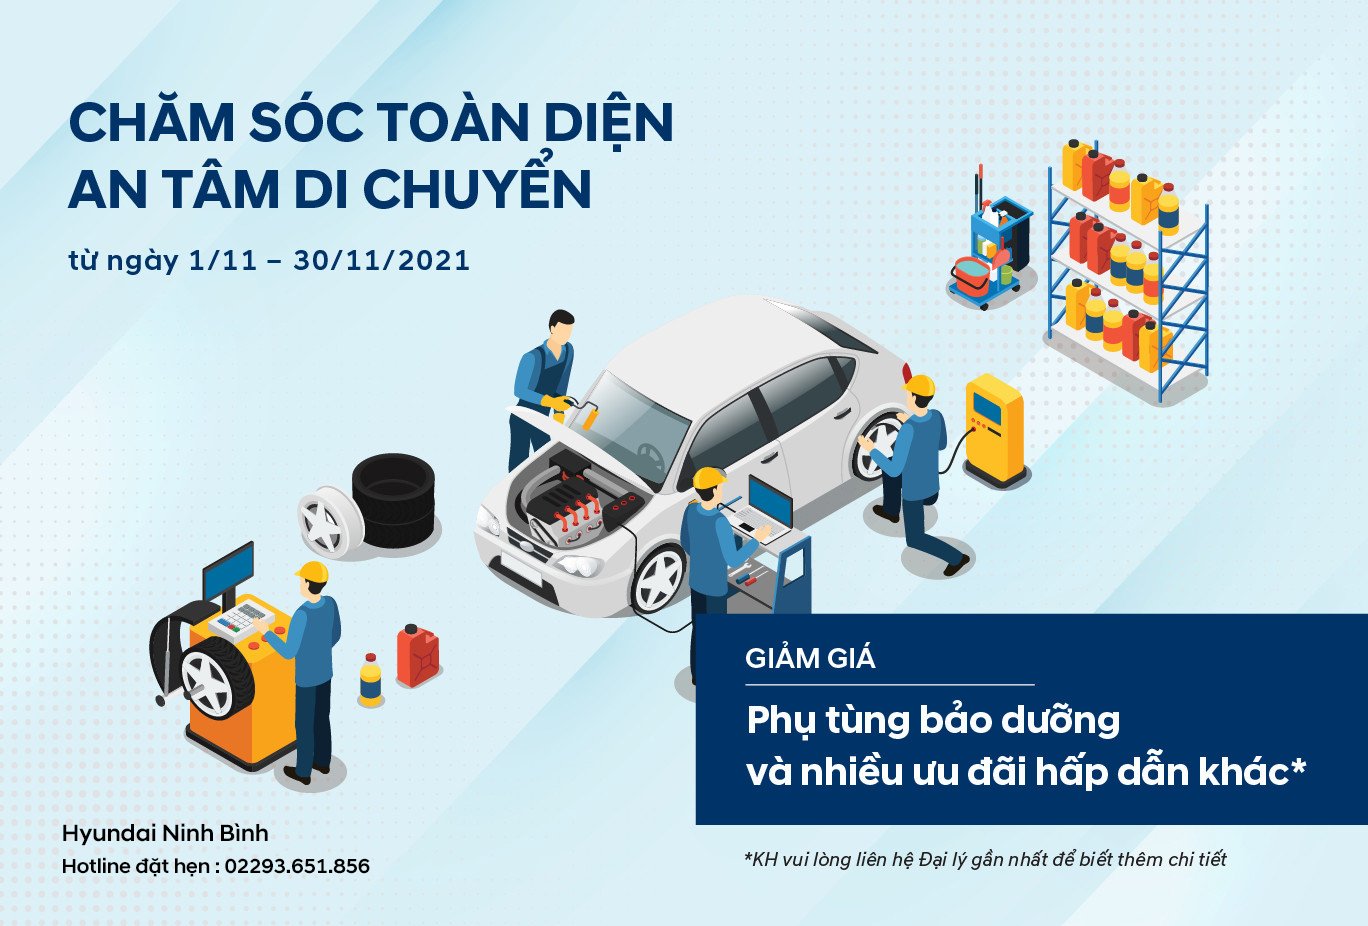 Hyundai Ninh Bình ưu đãi dịch vụ tháng 11 "Chăm sóc toàn diện - An tâm di chuyển"